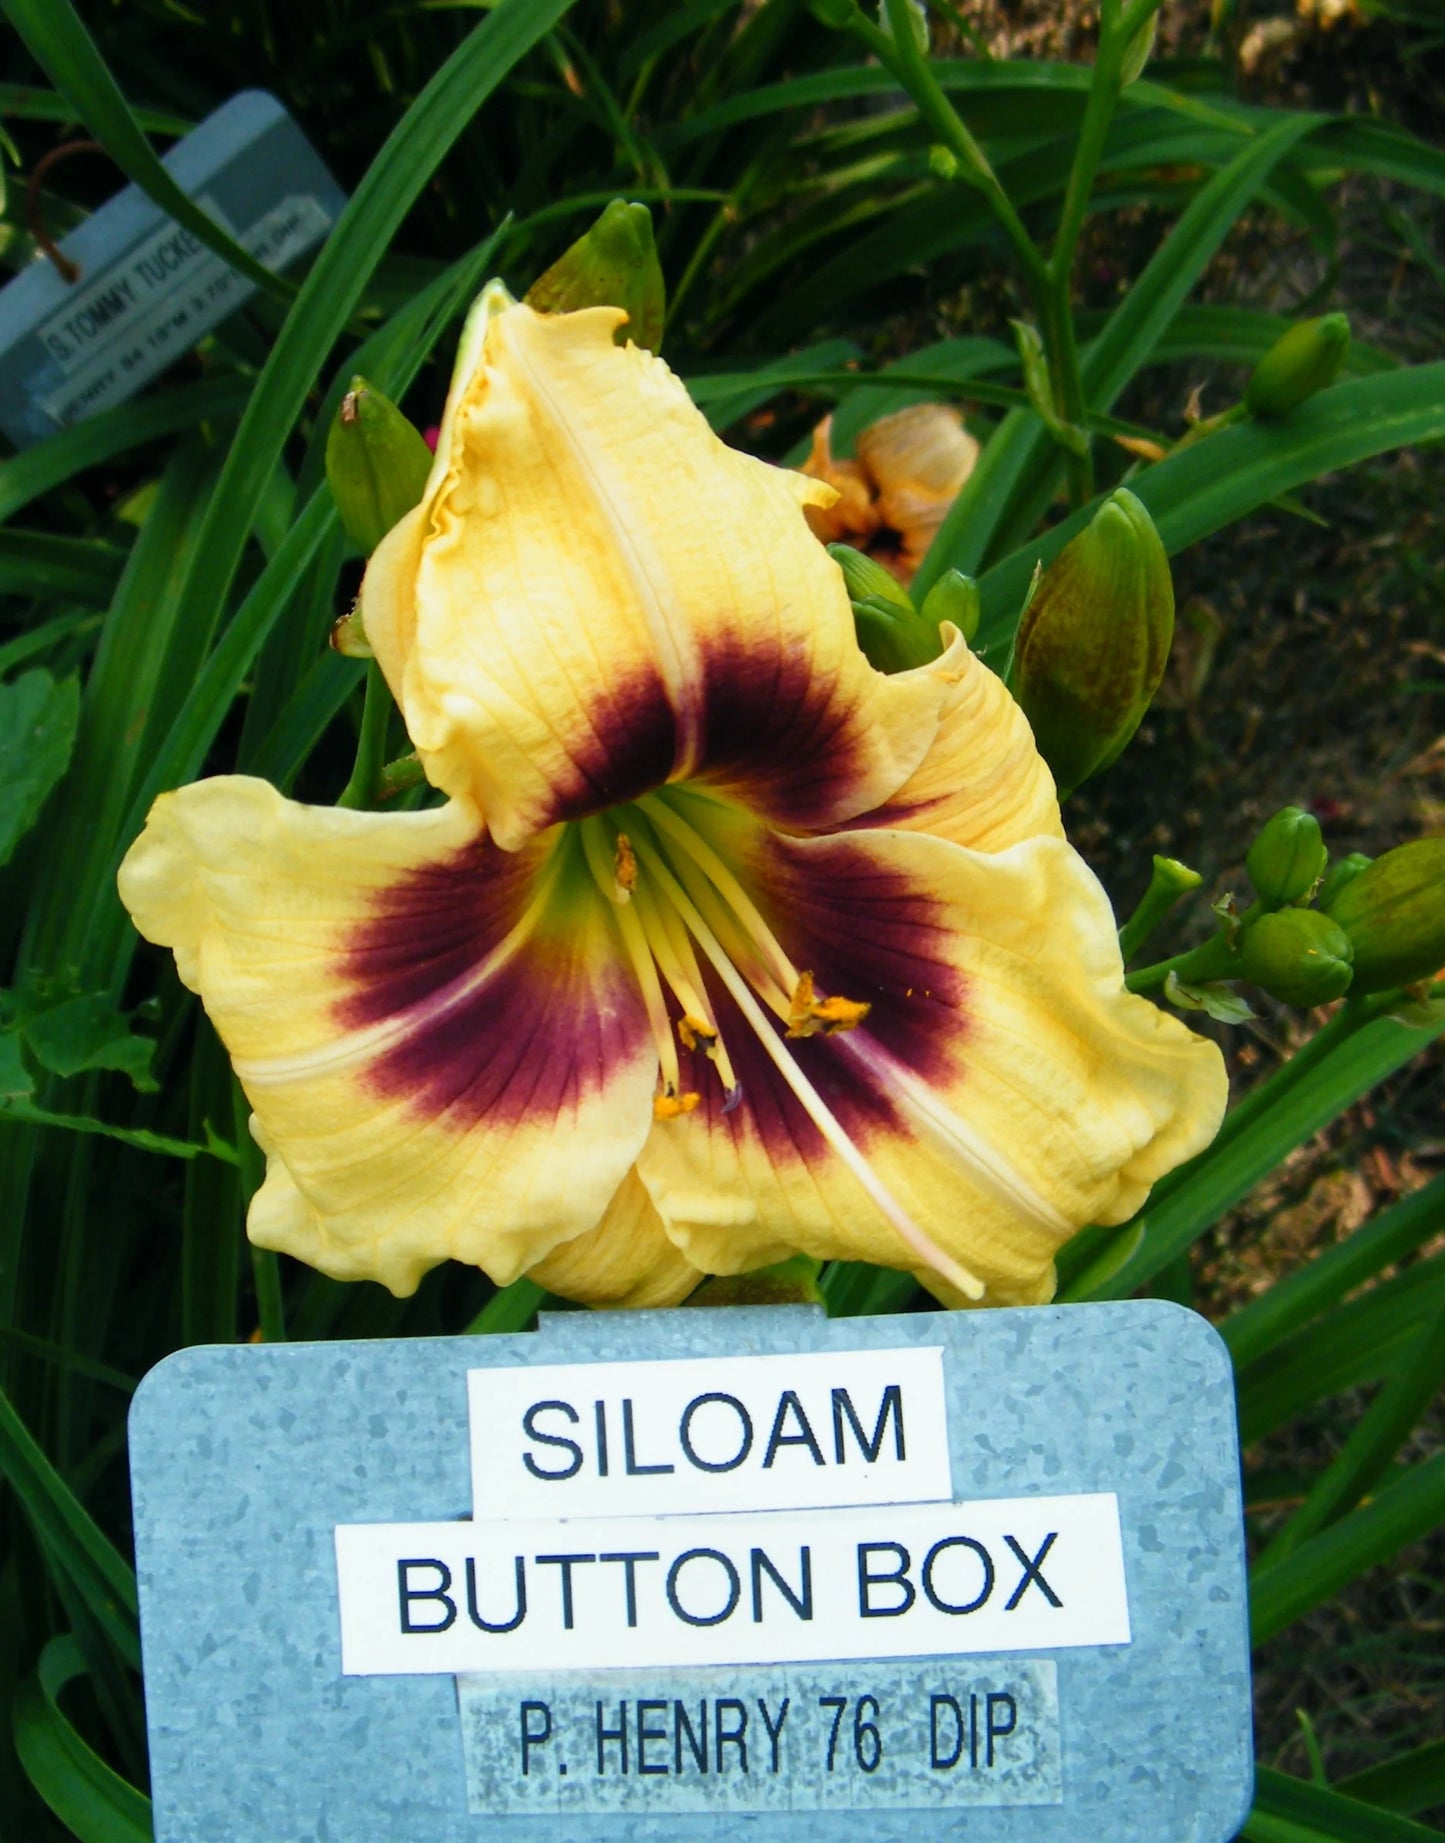 SILOAM BUTTON BOX